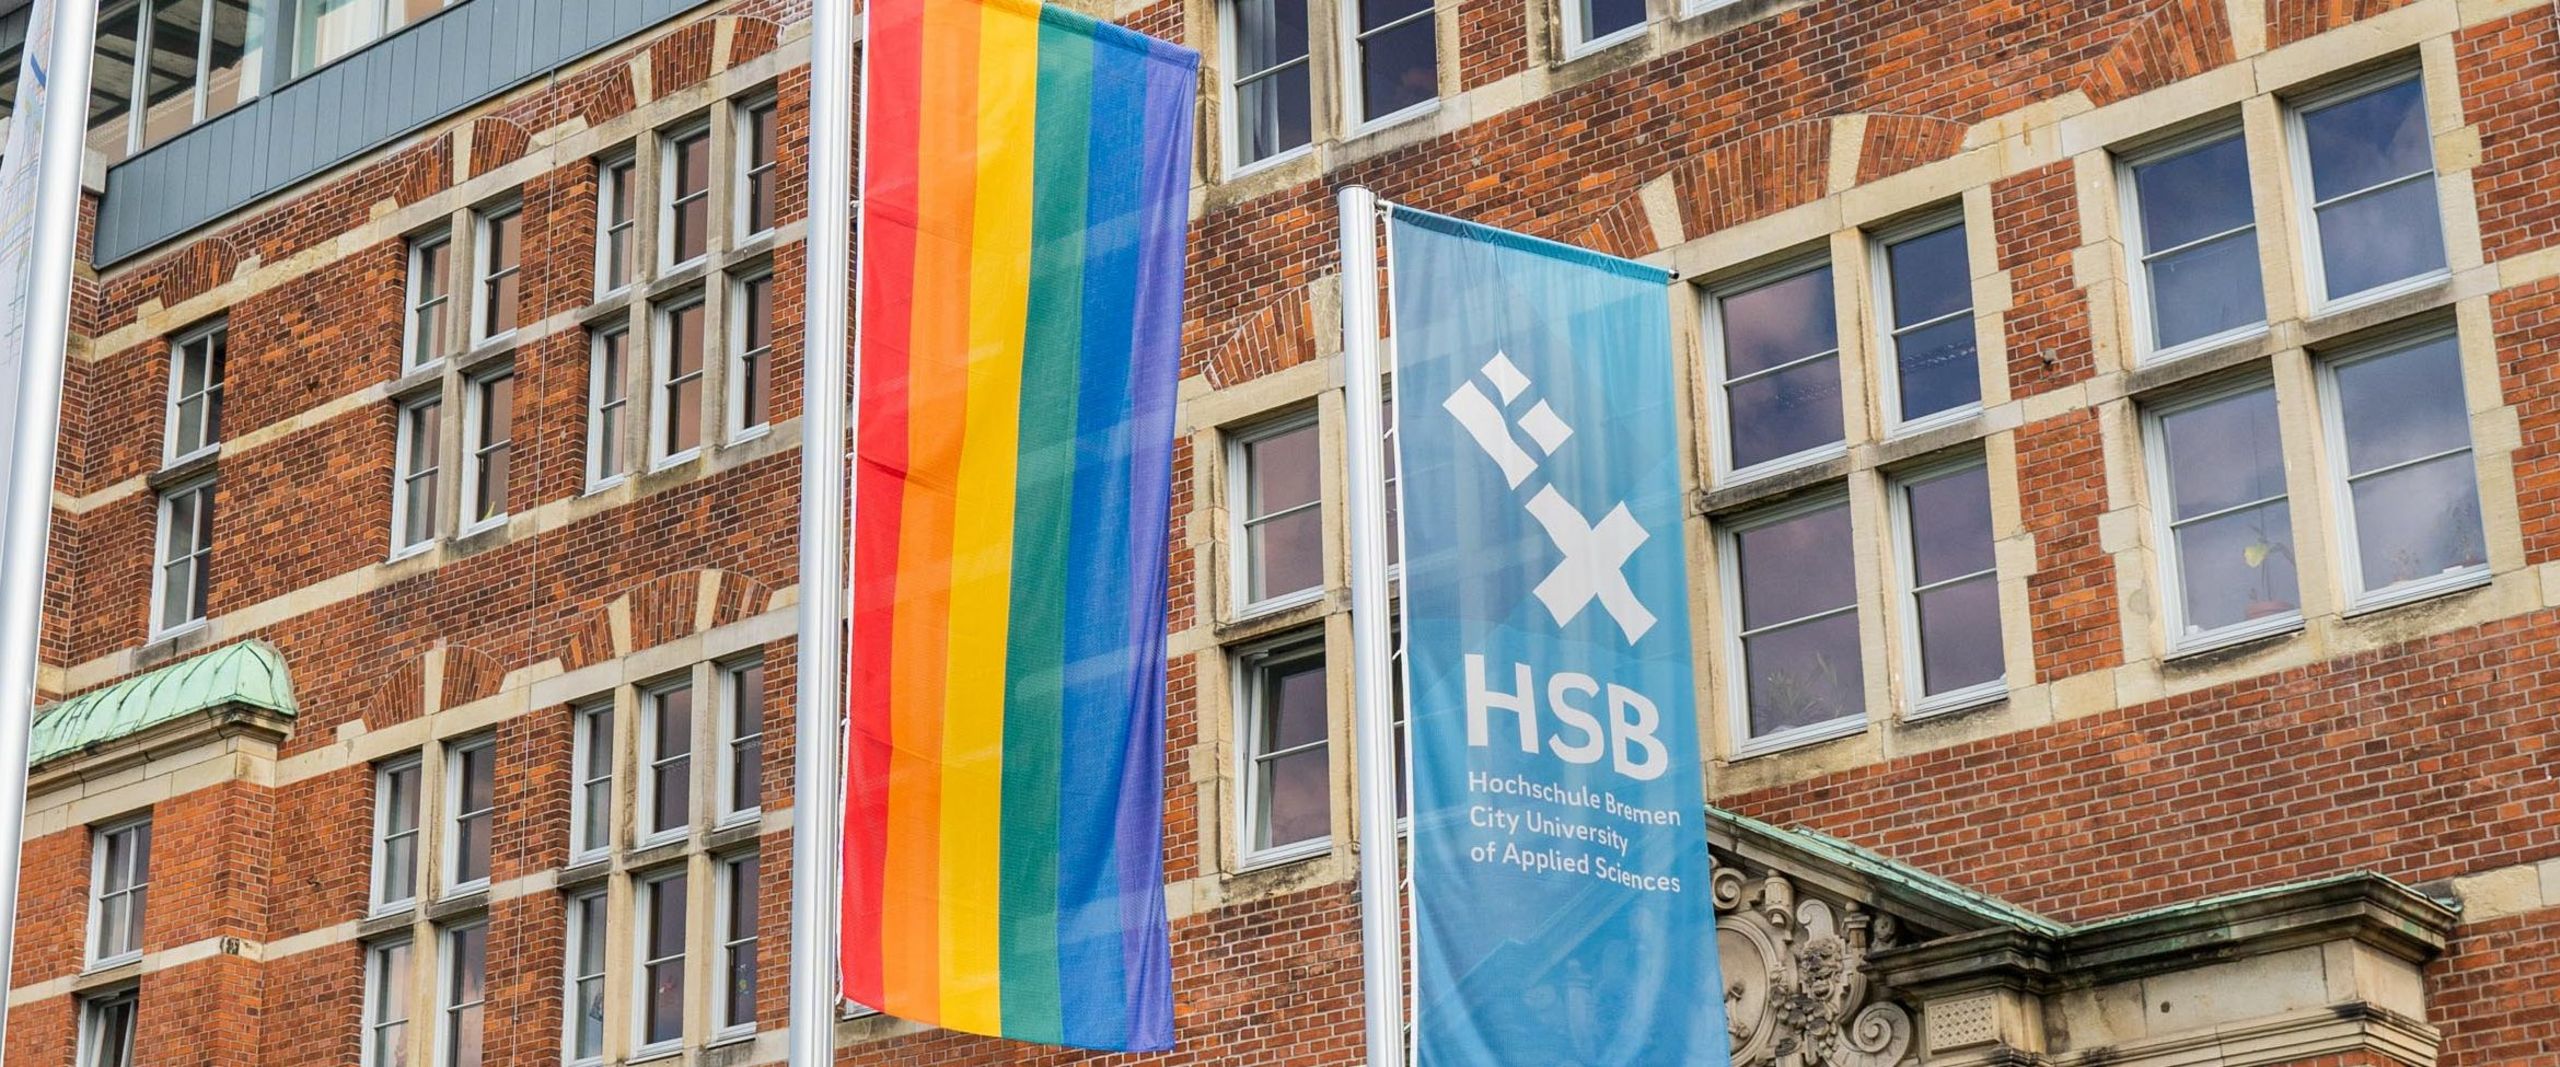 Eine Regenbogenflagge neben der HSB-Flagge.